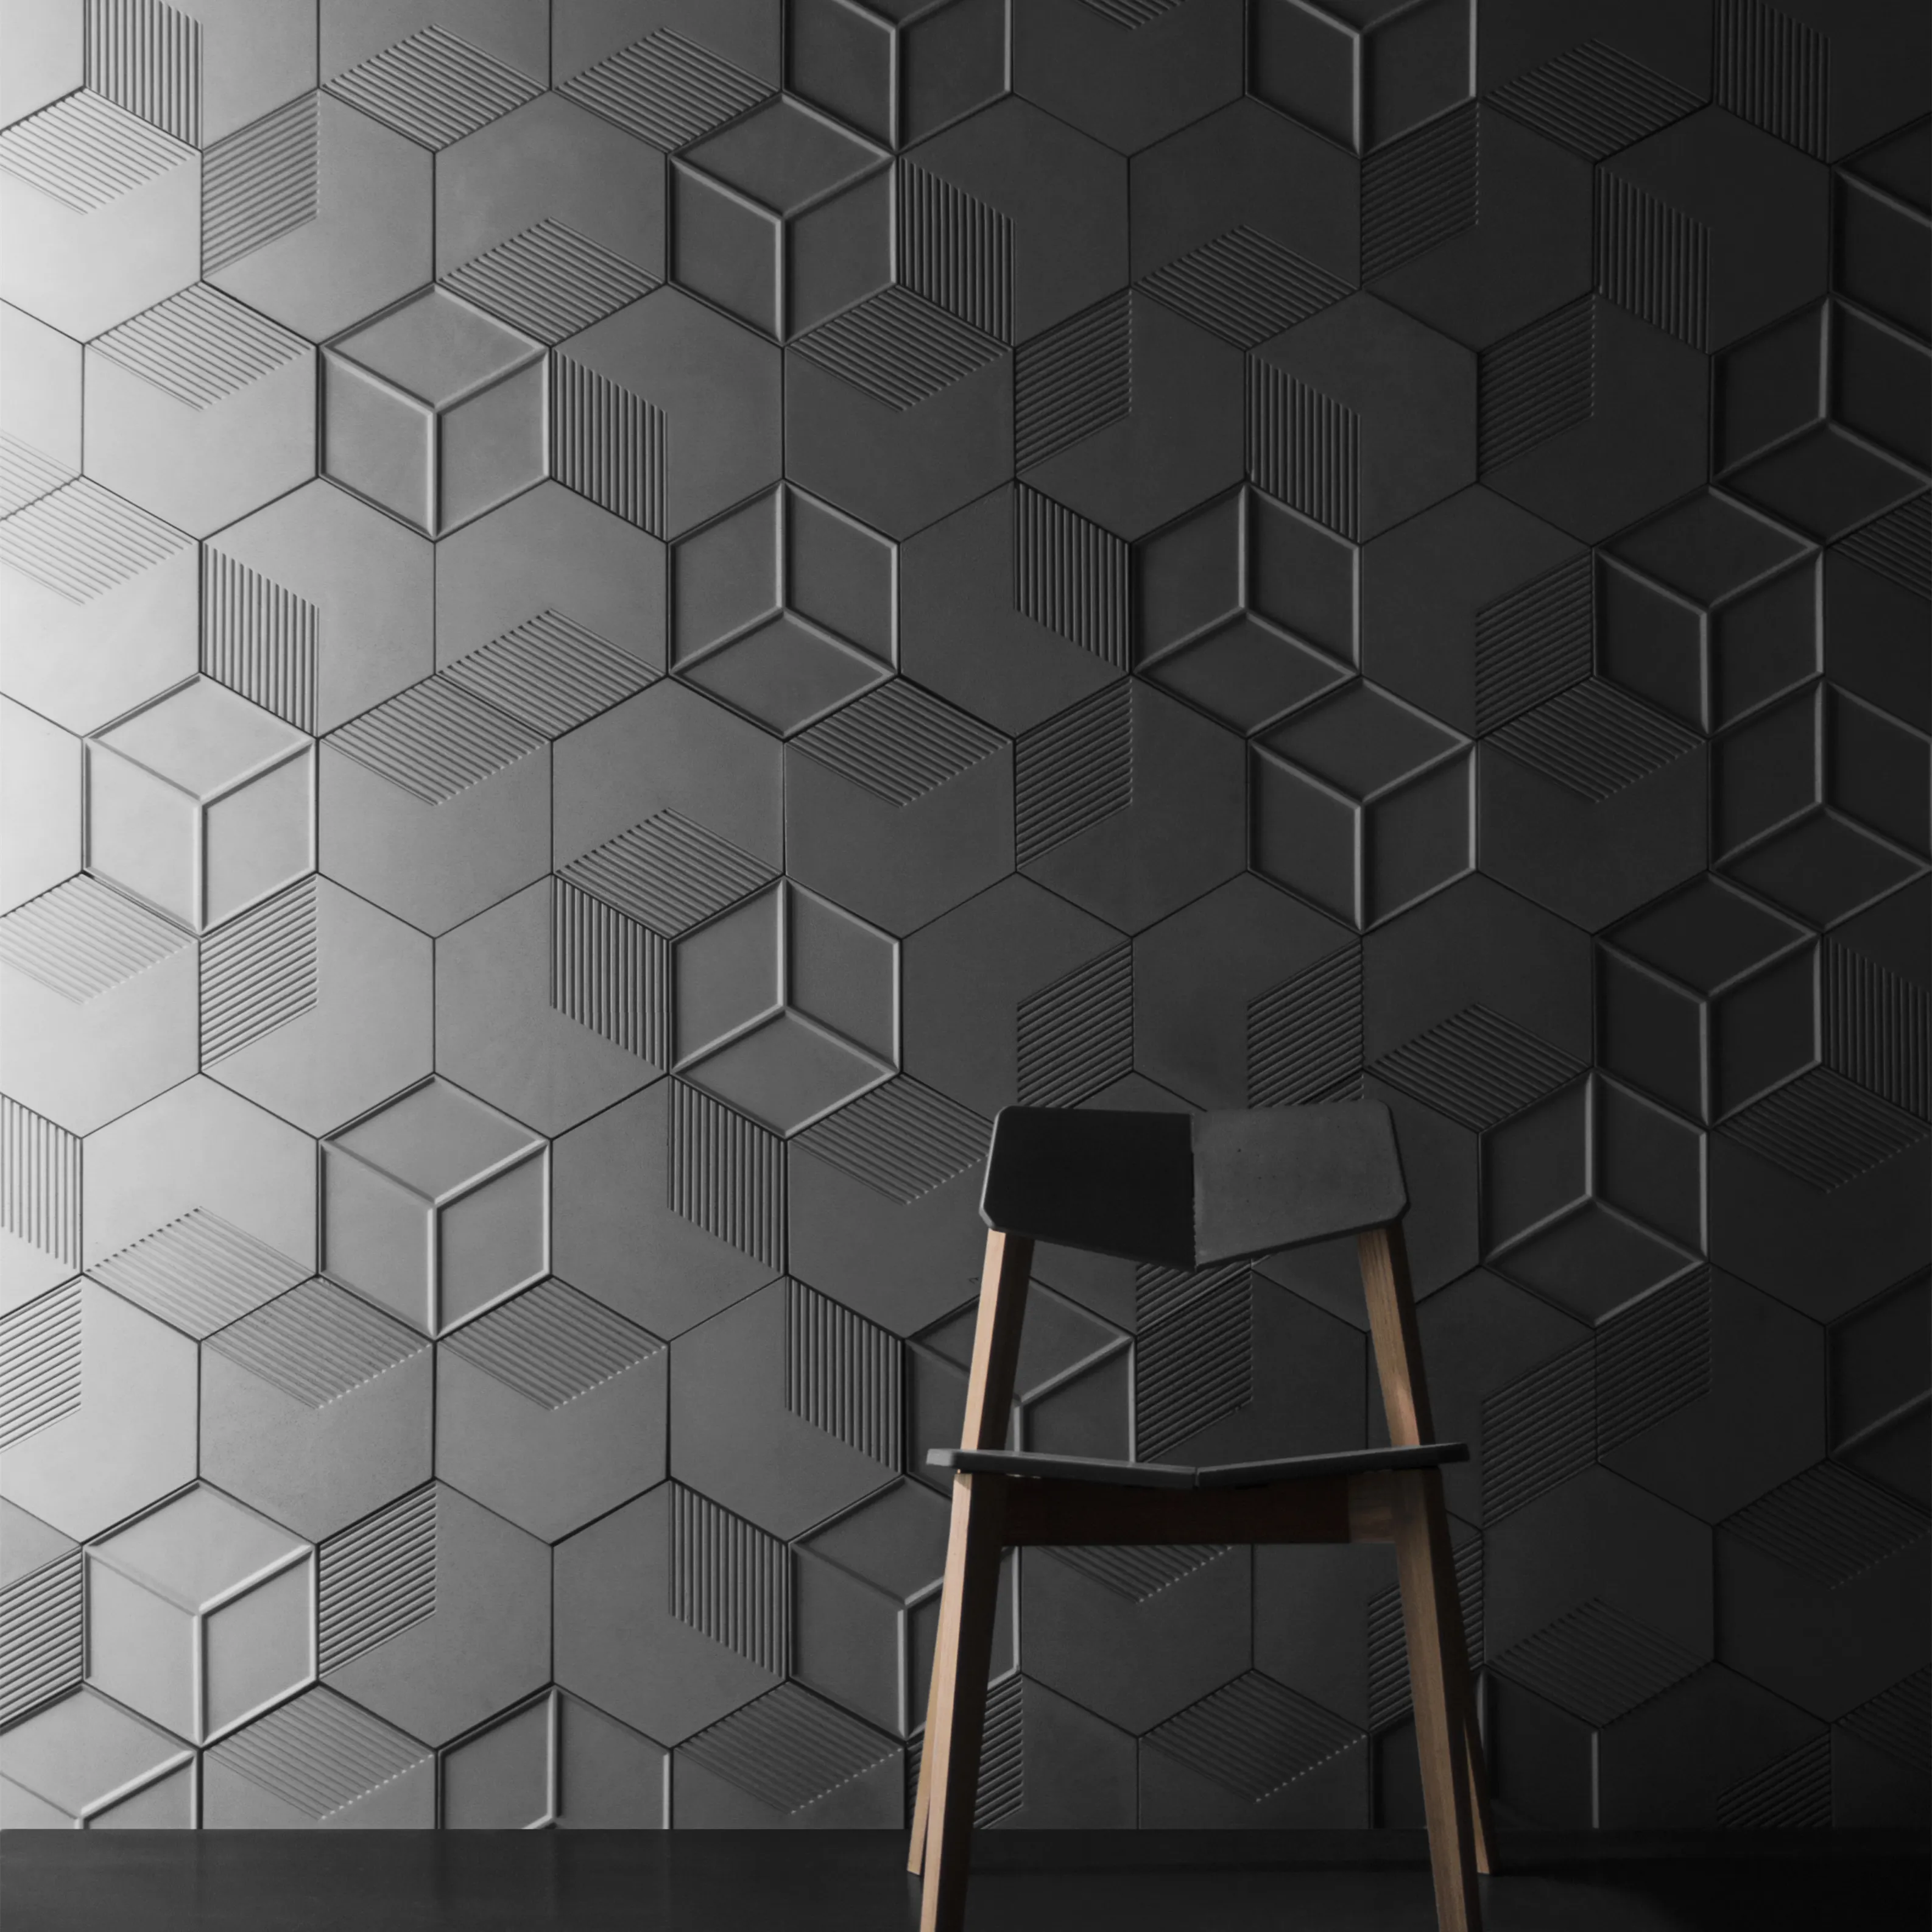 Bentu 6 육각 디자인 장식 인테리어 콘크리트 3d 벽 타일 회색 벽 벽돌 거실 침실